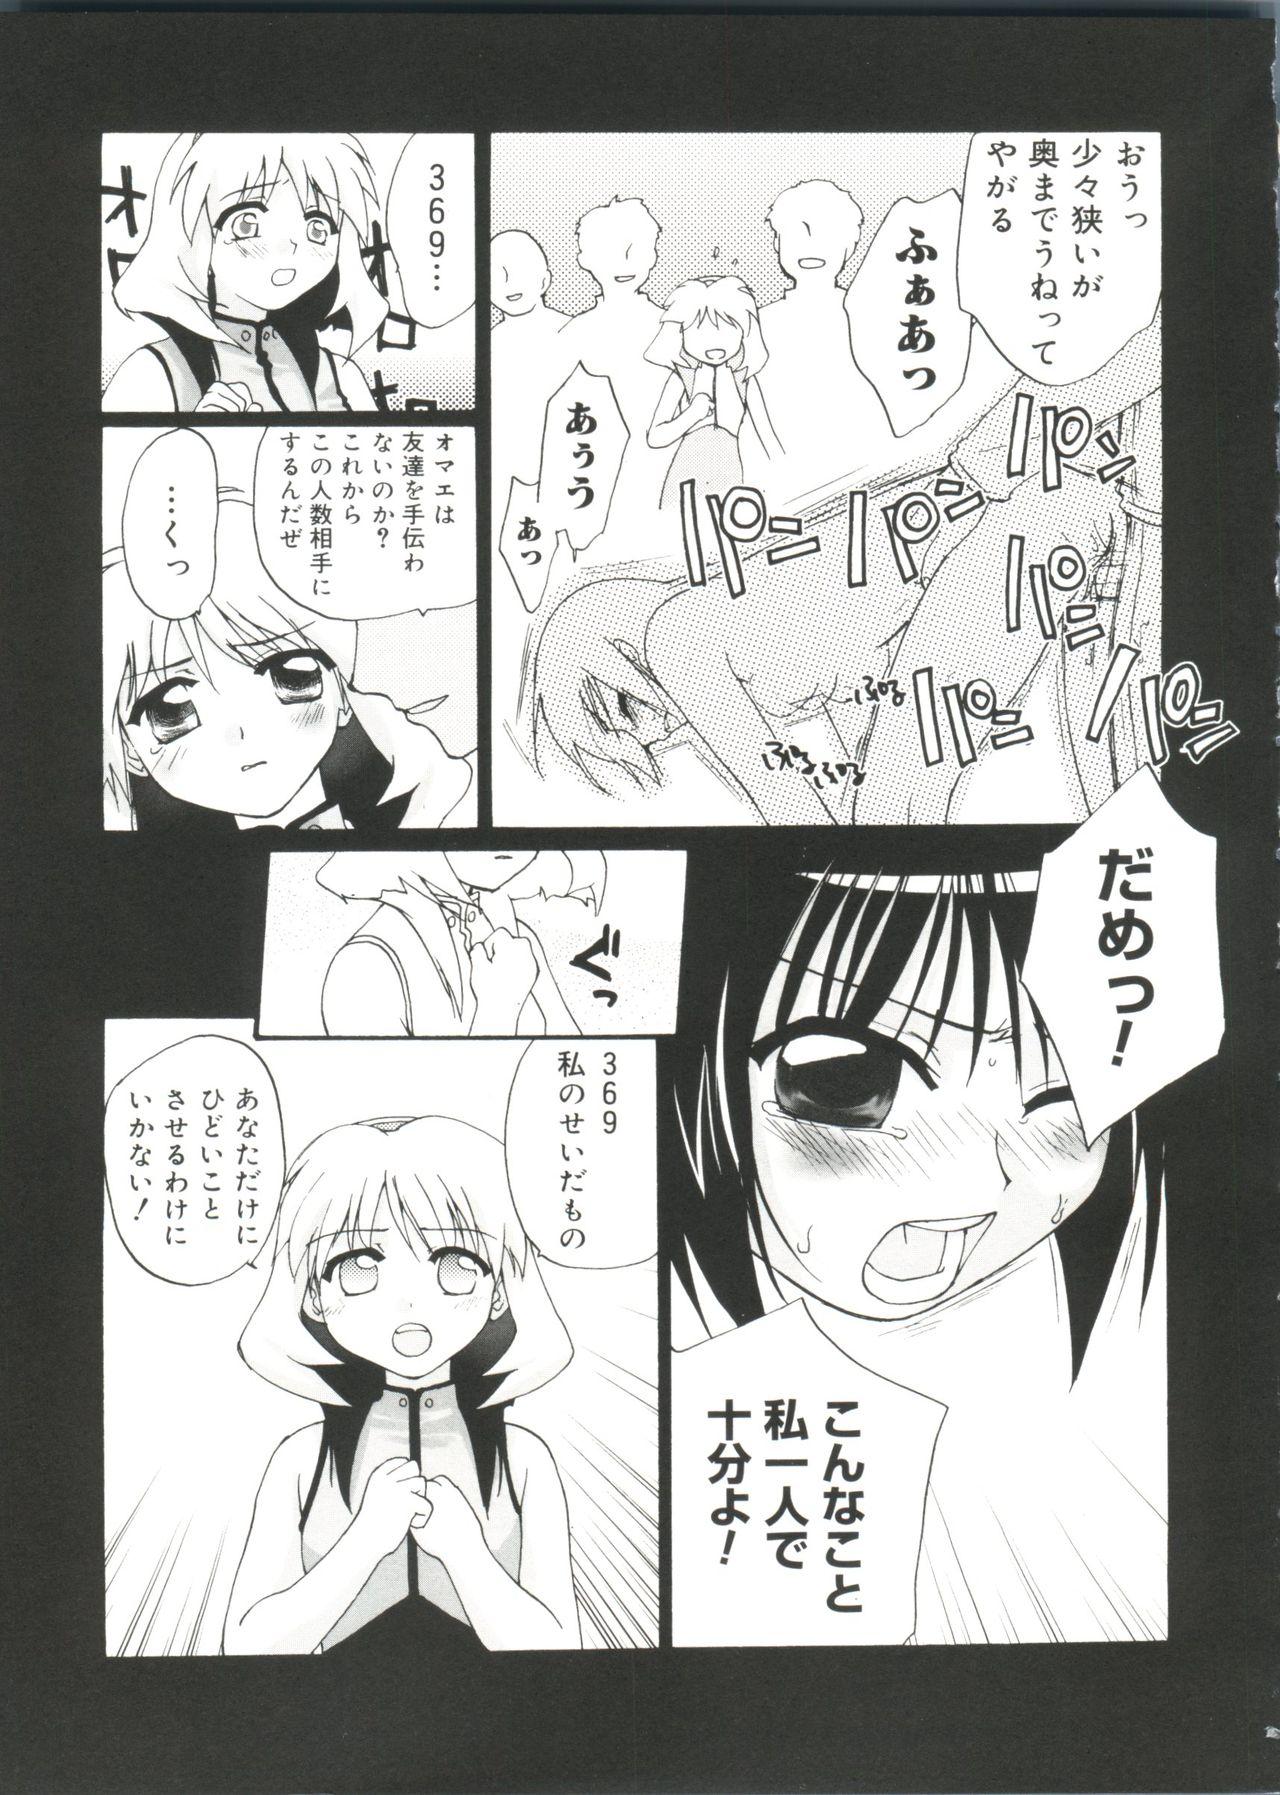 Thick Love Chara Zensho Vol. 2 - Cardcaptor sakura Sister princess Chobits Tokyo mew mew Mahoromatic Camshow - Page 8